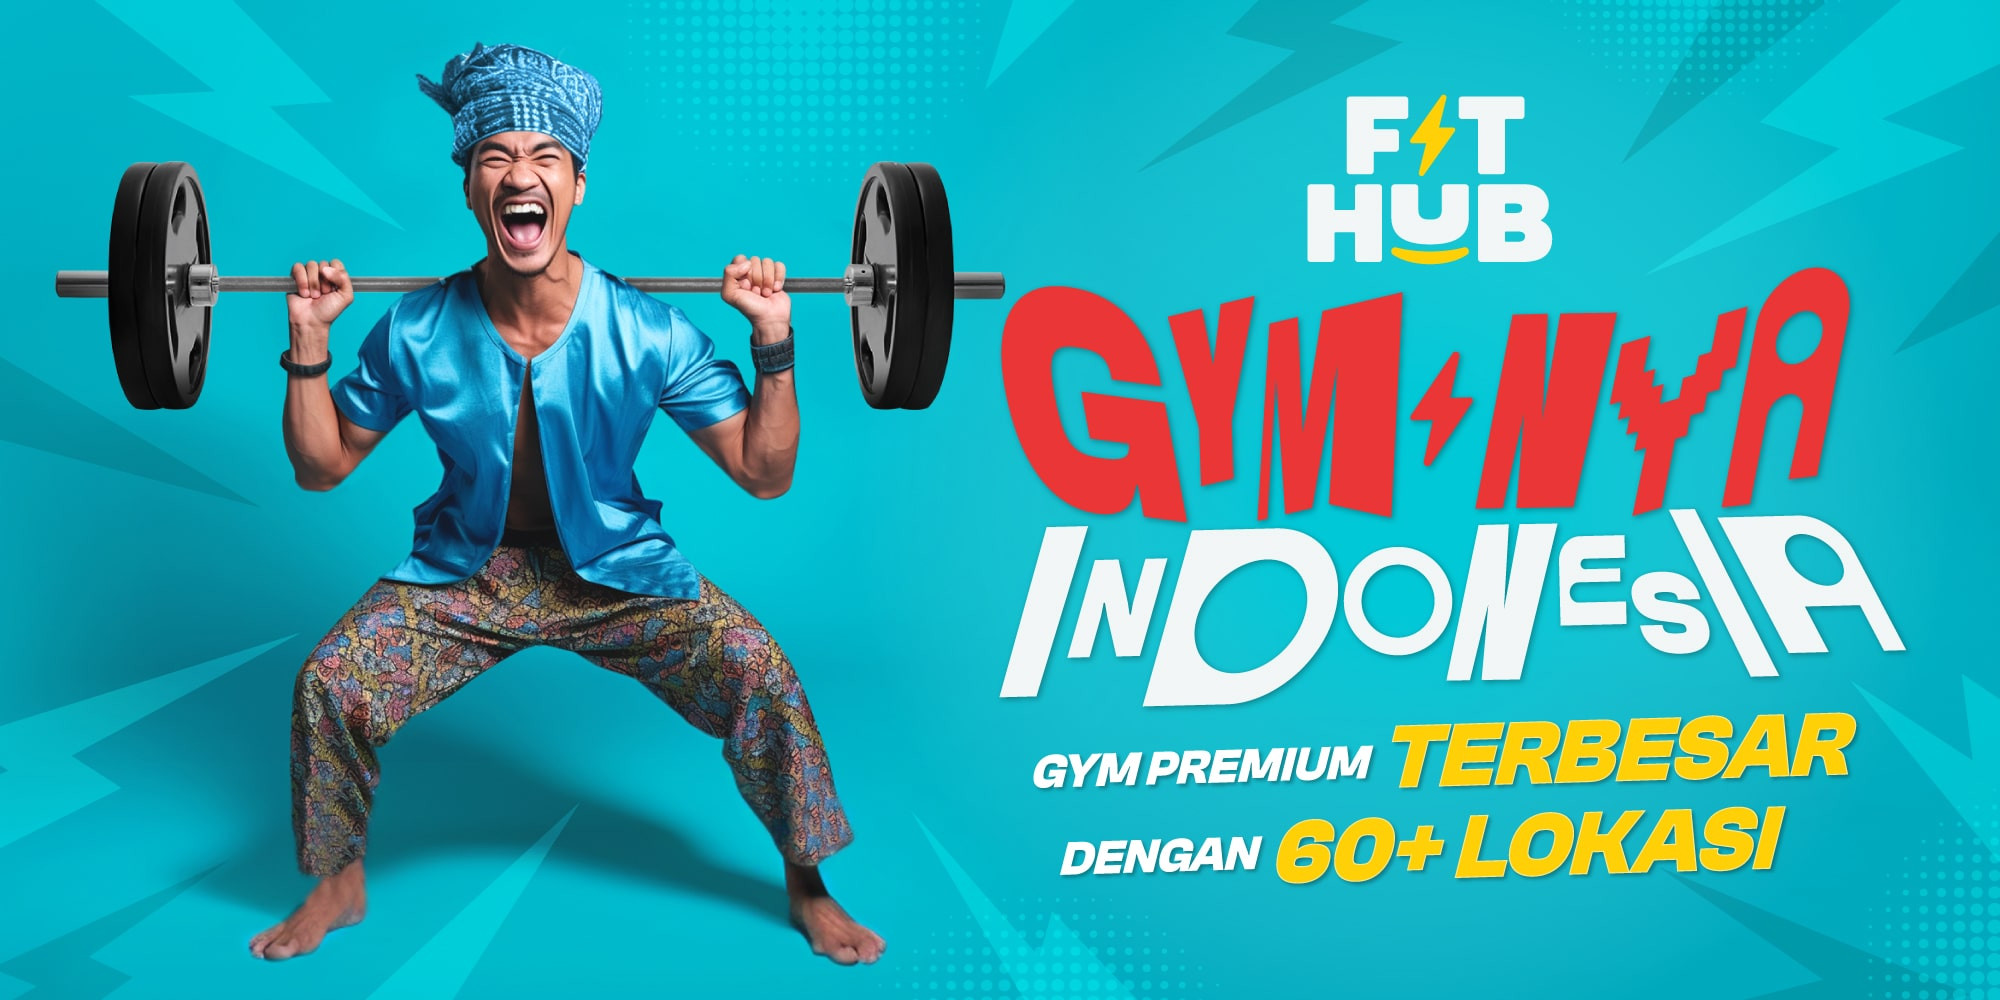 Selebrasi Anniversary Ketiga, Fit Hub Wujudkan Indonesia Sehat Melalui Kampanye “Gym-Nya Indonesia”